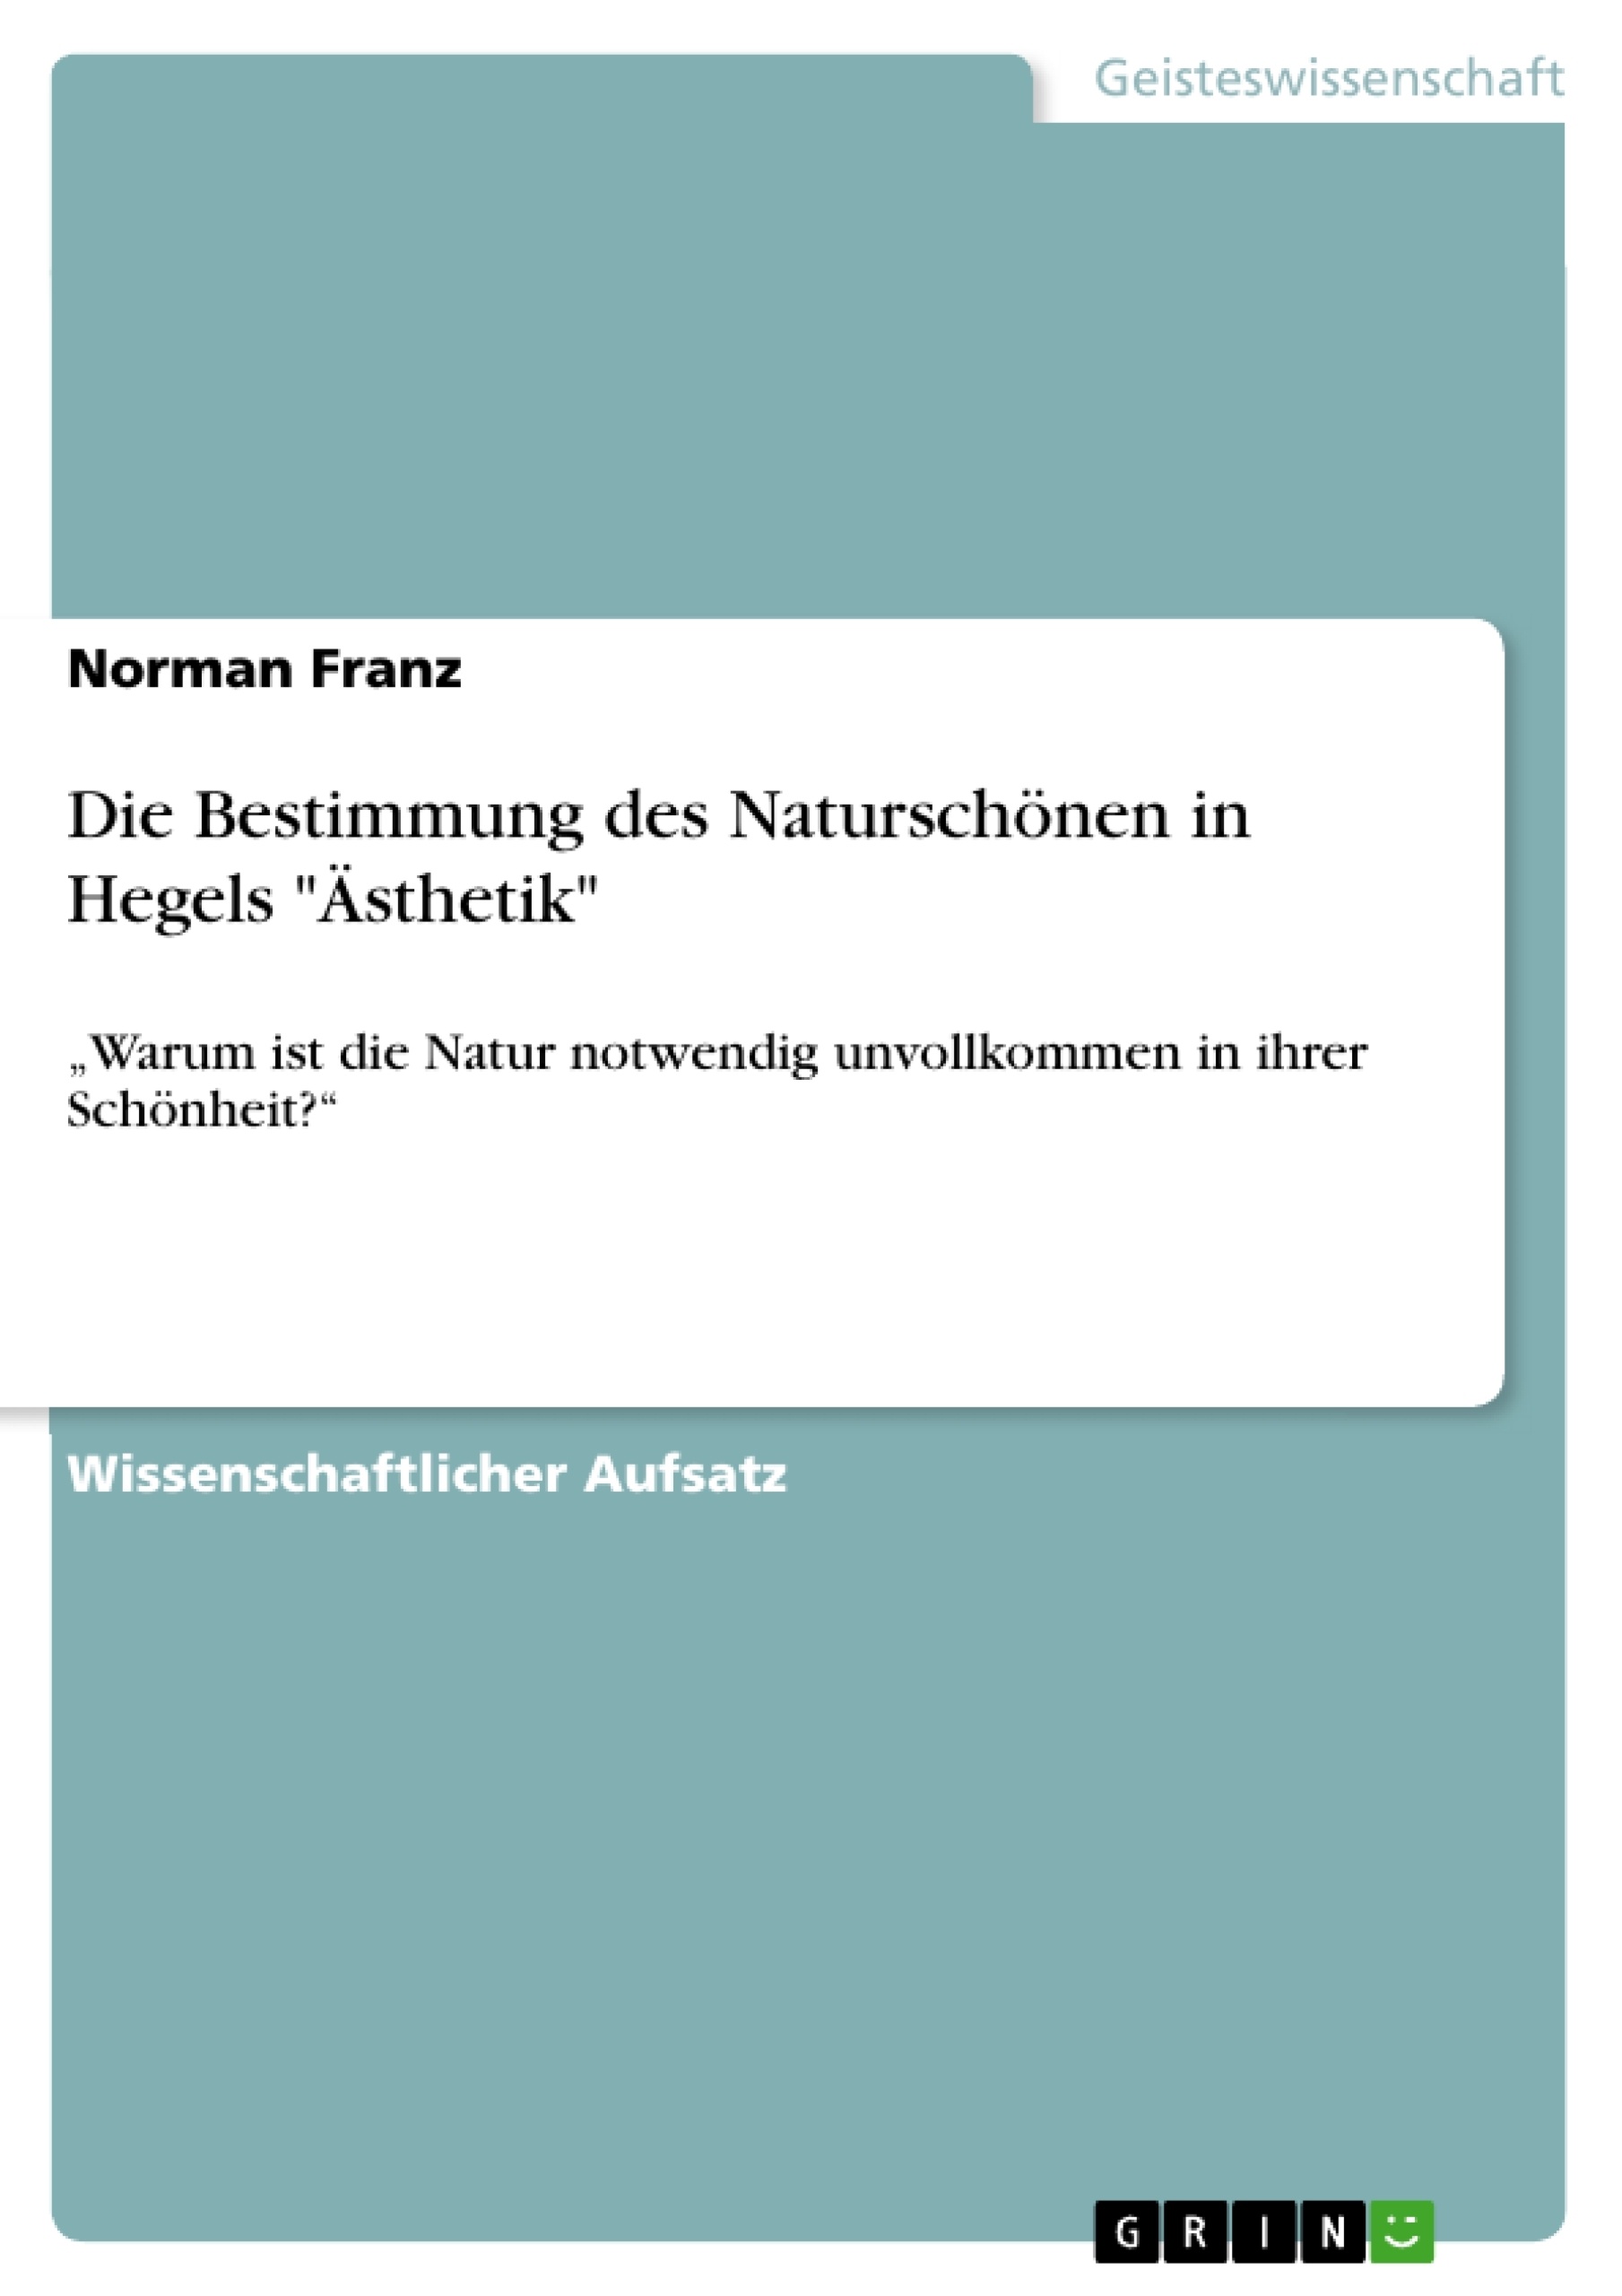 Título: Die Bestimmung des Naturschönen  in Hegels "Ästhetik"